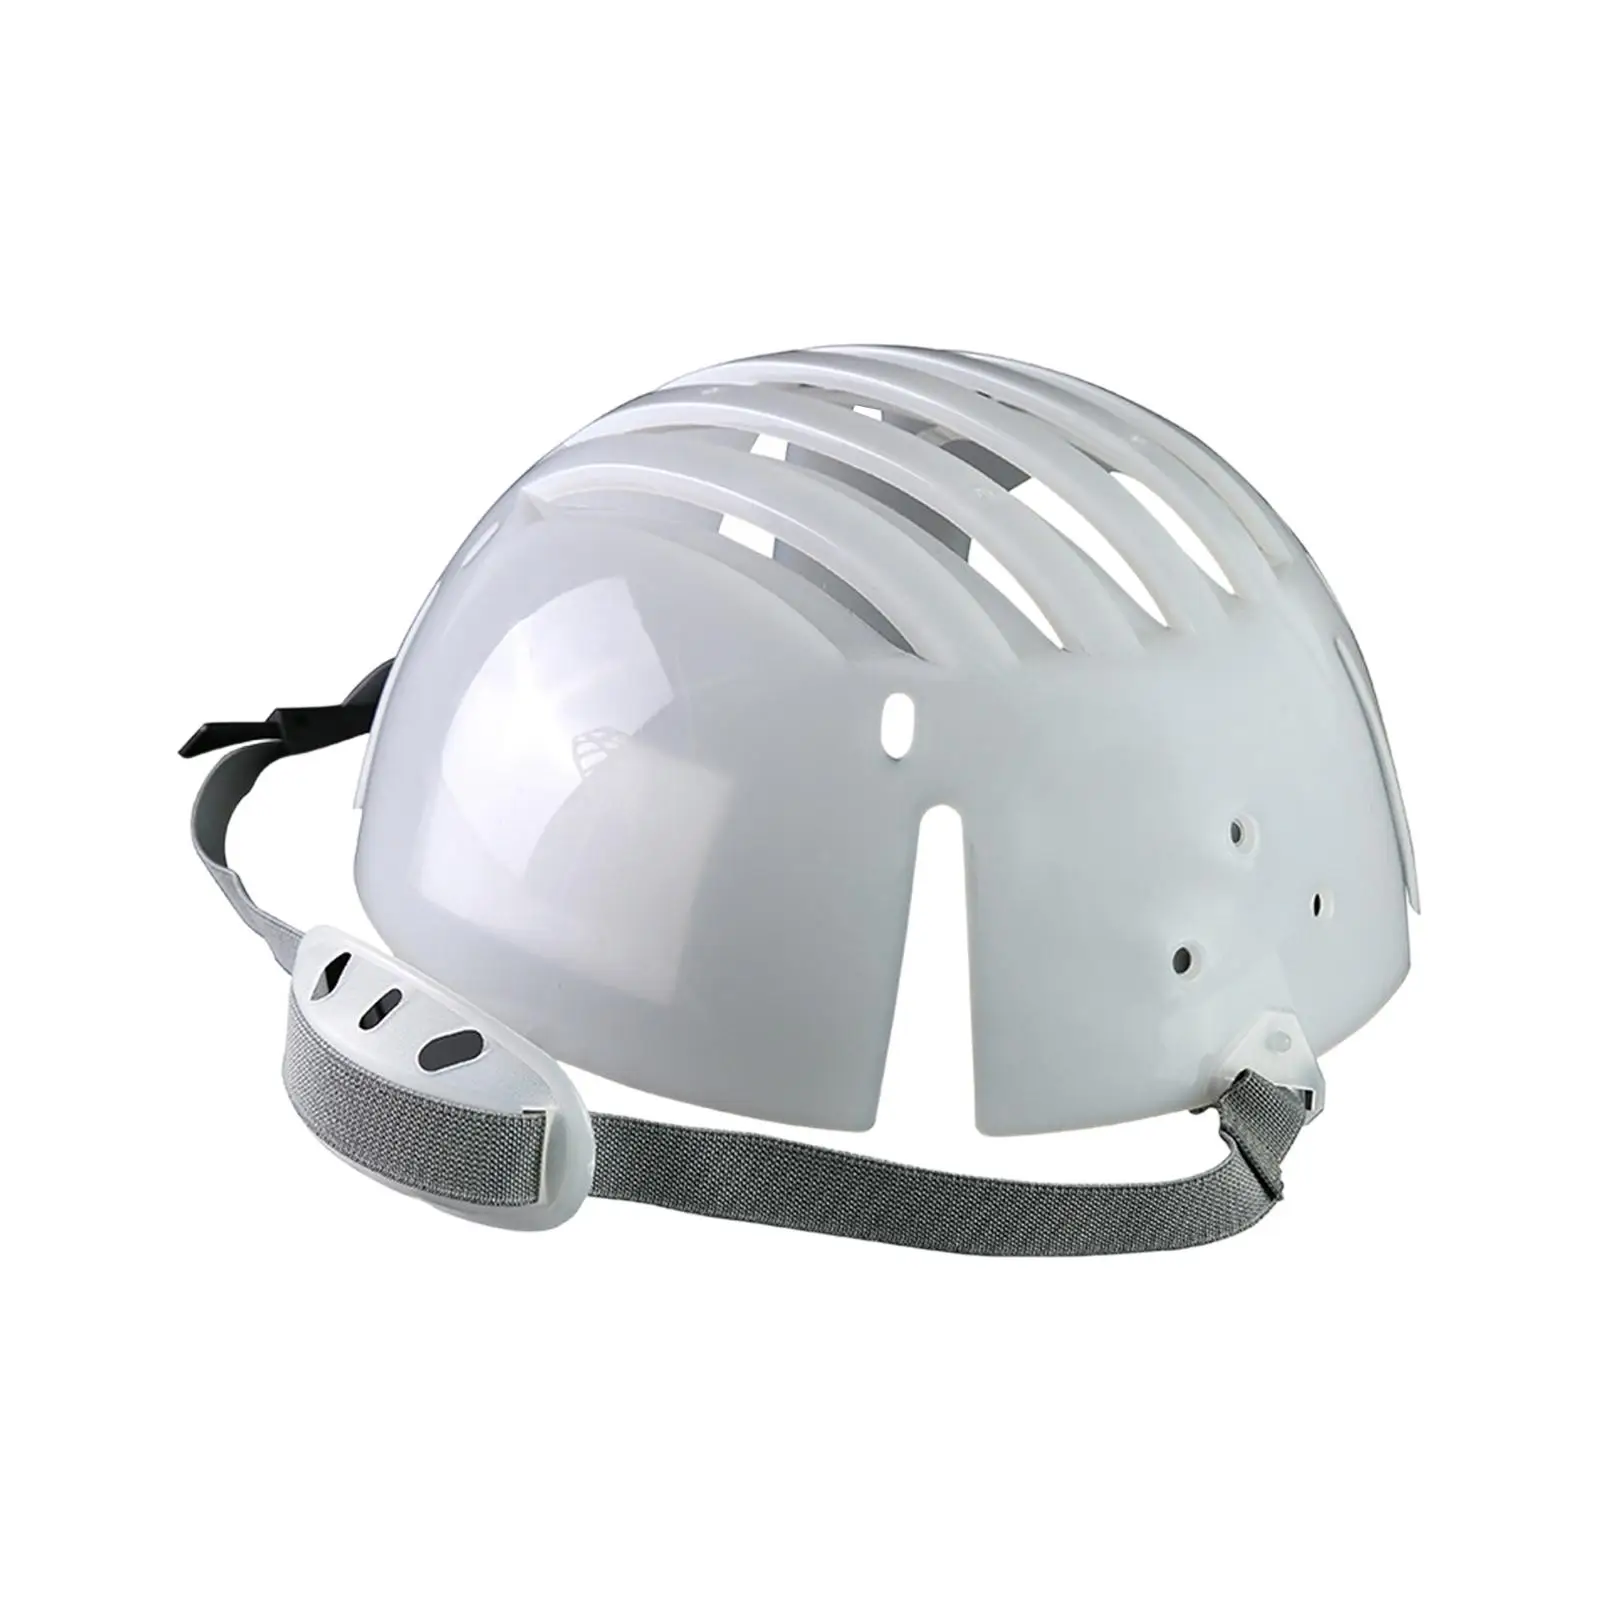 Bump Cap Insert Lightweight PE for Baseball Hat Head Protection Bumper Hat Insert